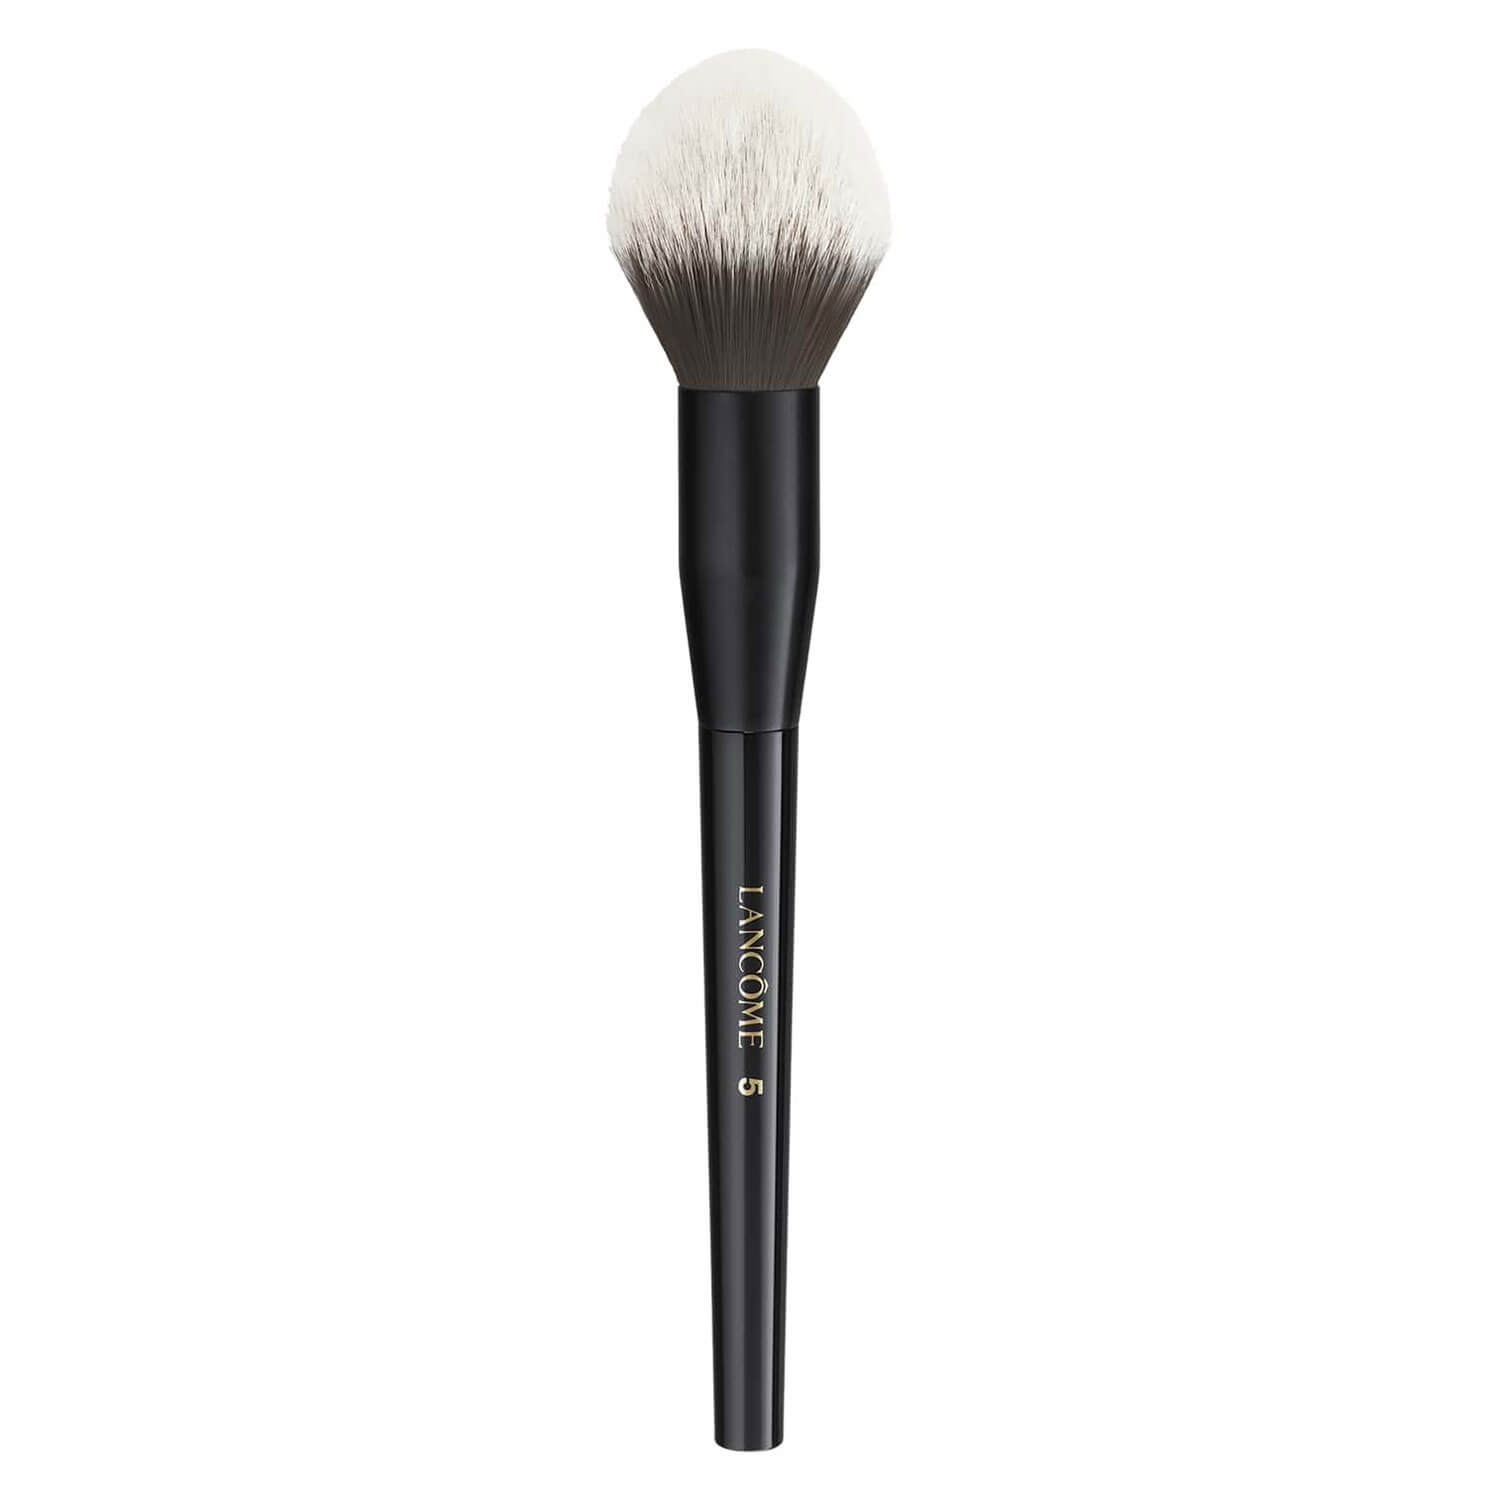 Image du produit de Lancôme Tools - Lush Full Face Powder Brush 05